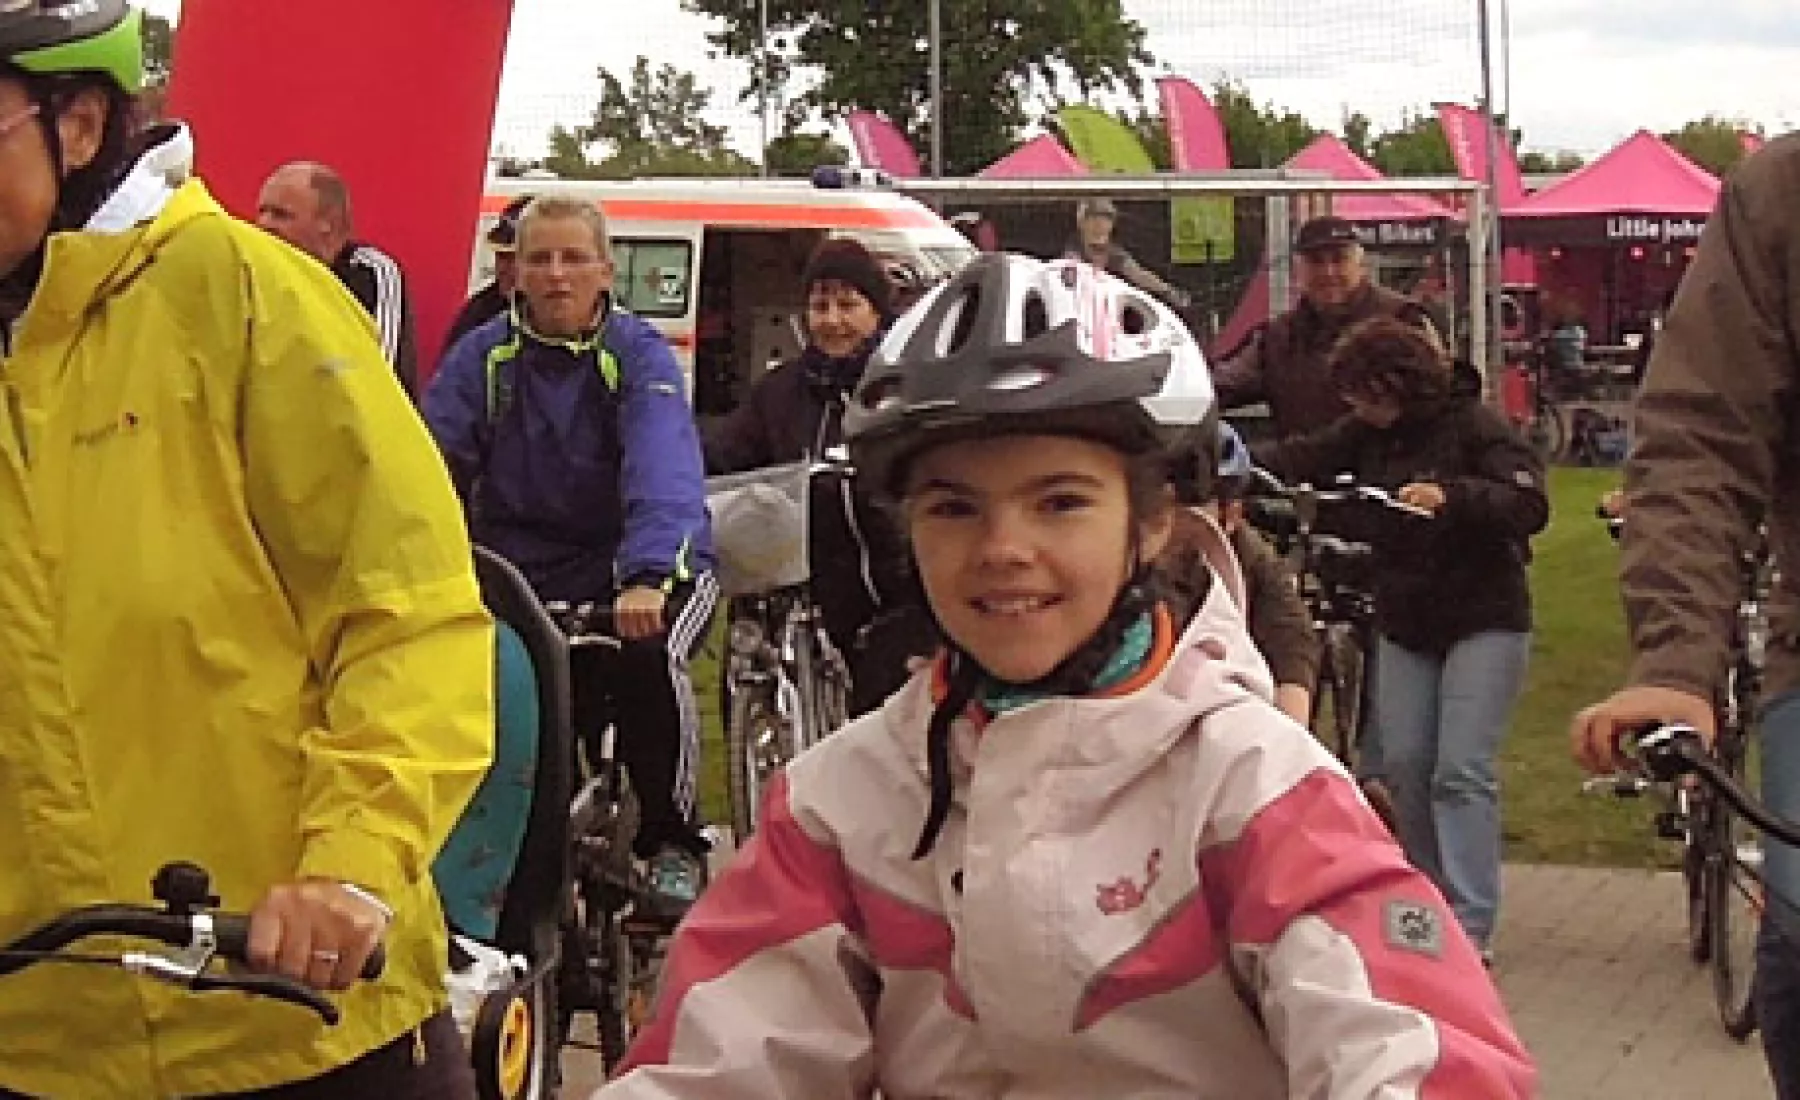 Familien-Fahrrad-Fest Wanzleben